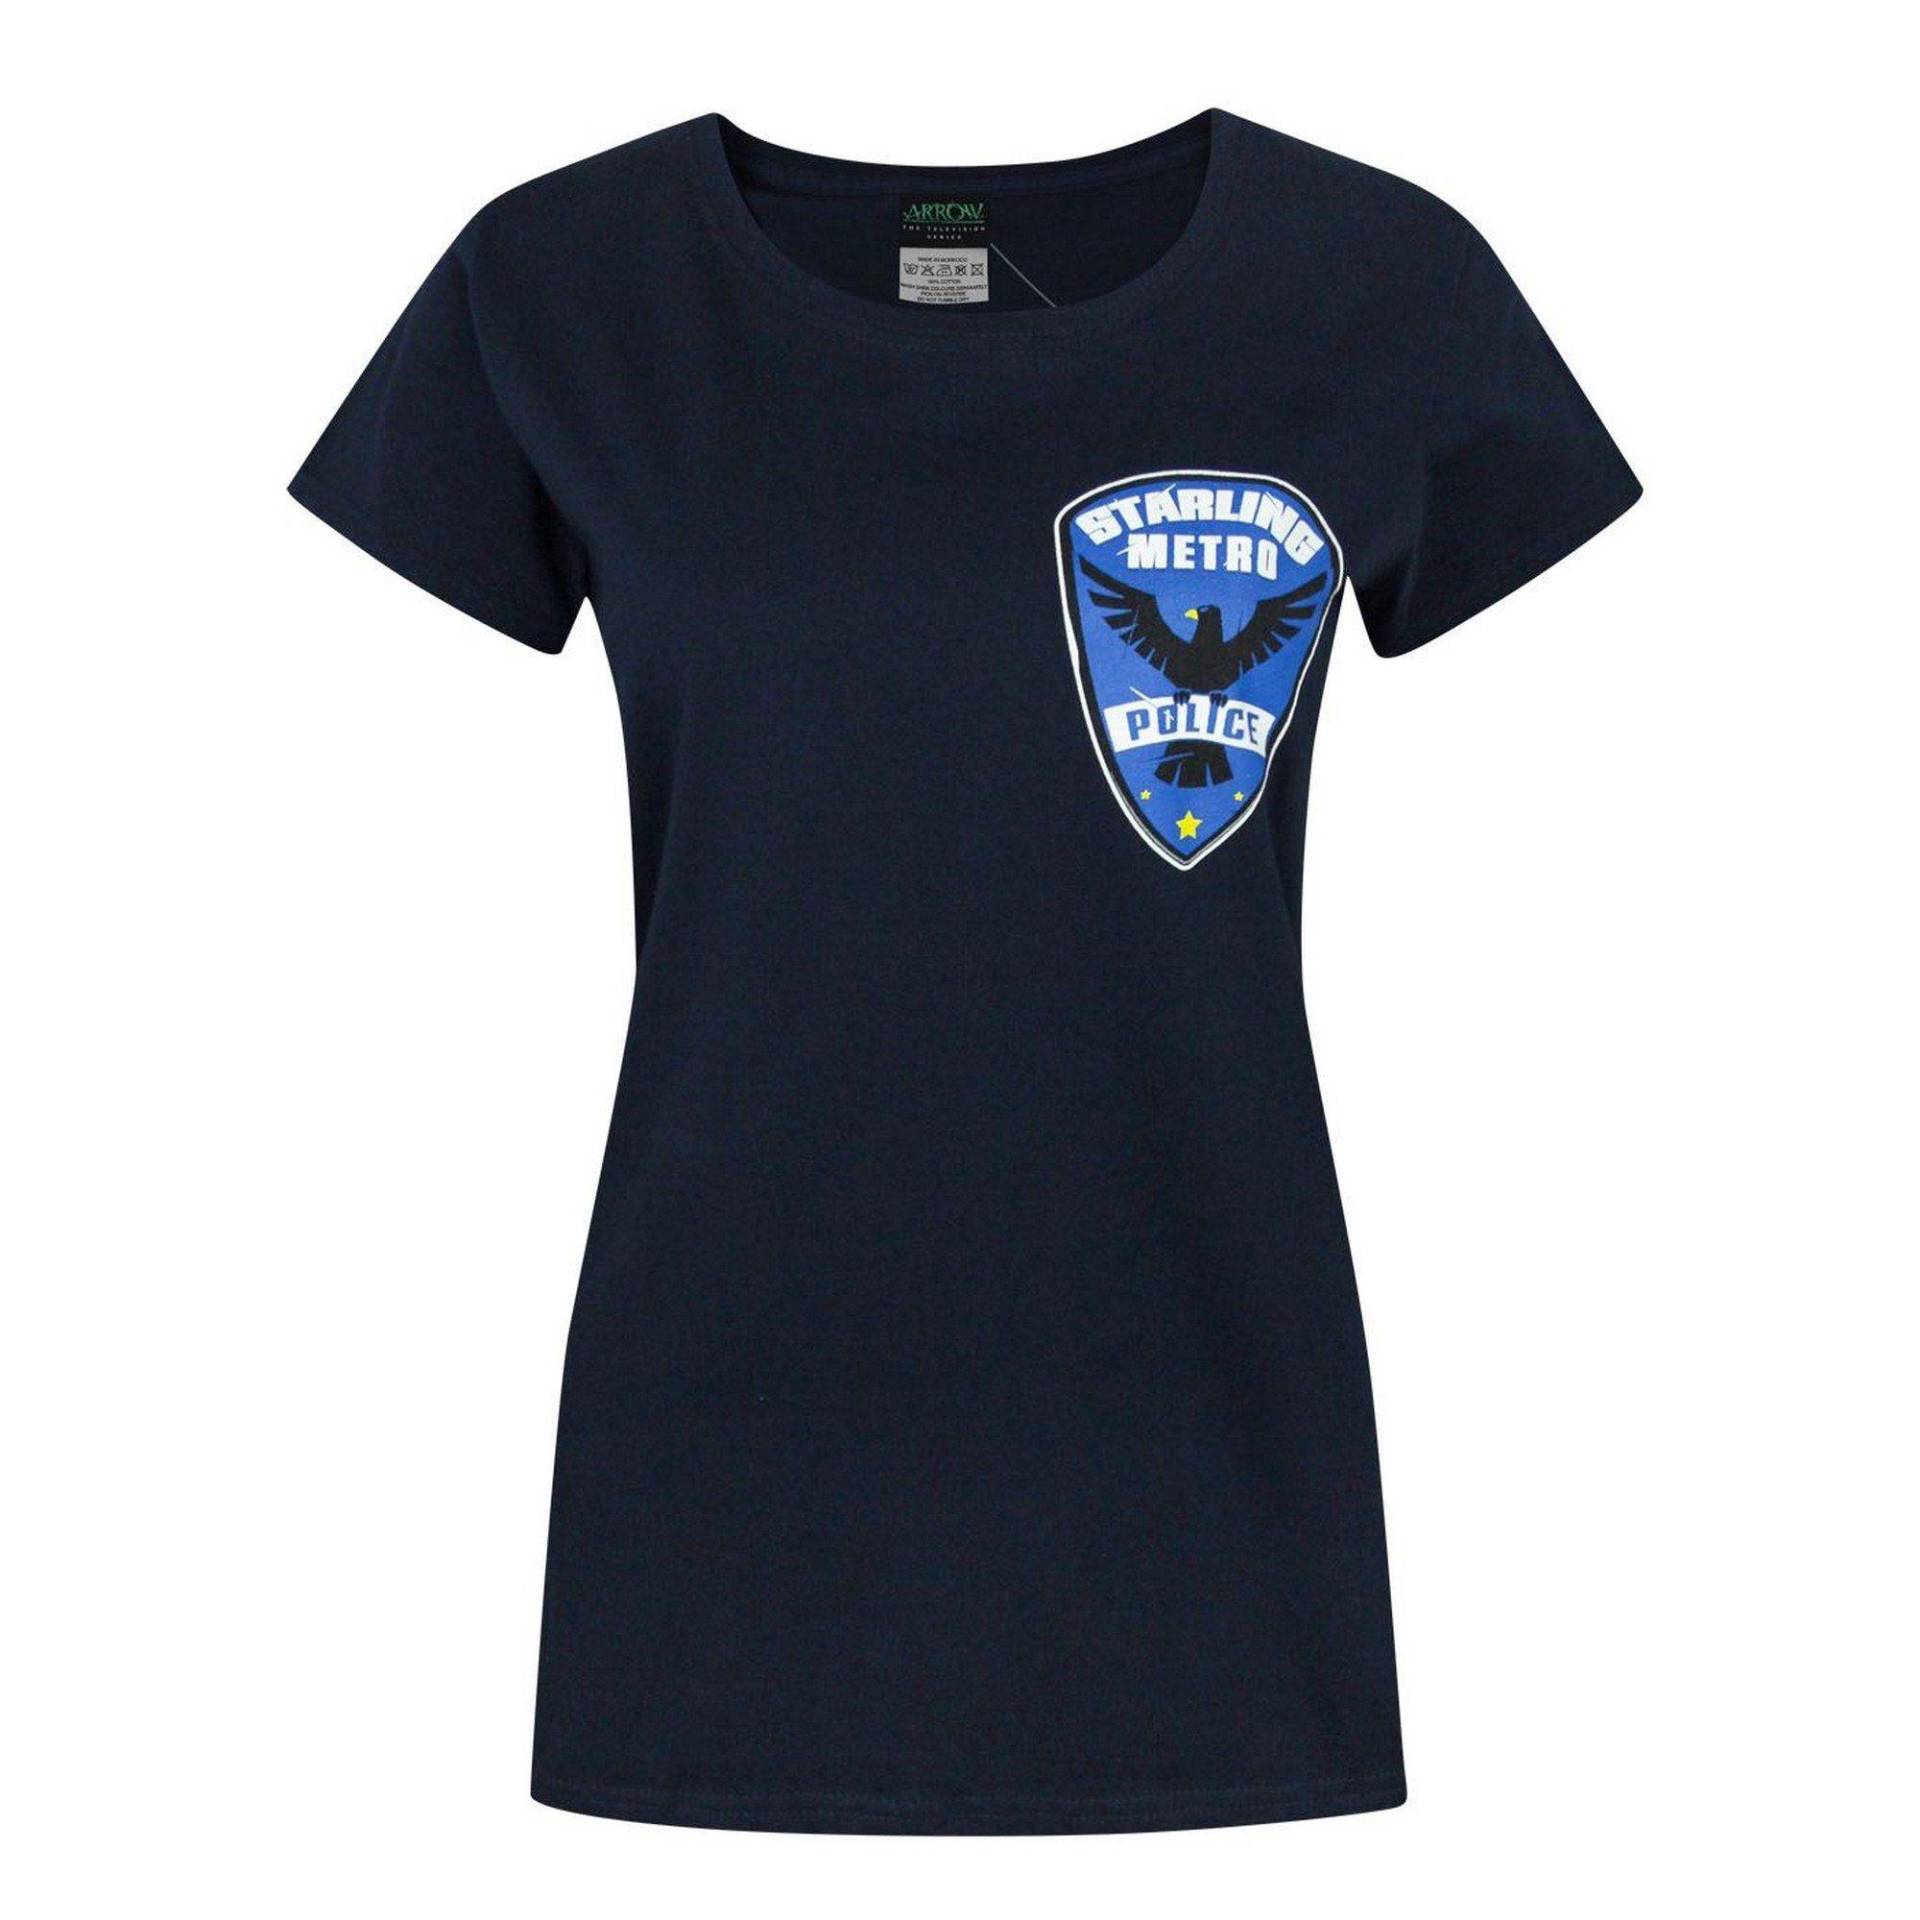 Tshirt Mit Starling City Metro Police Design Damen Blau L von ARROW